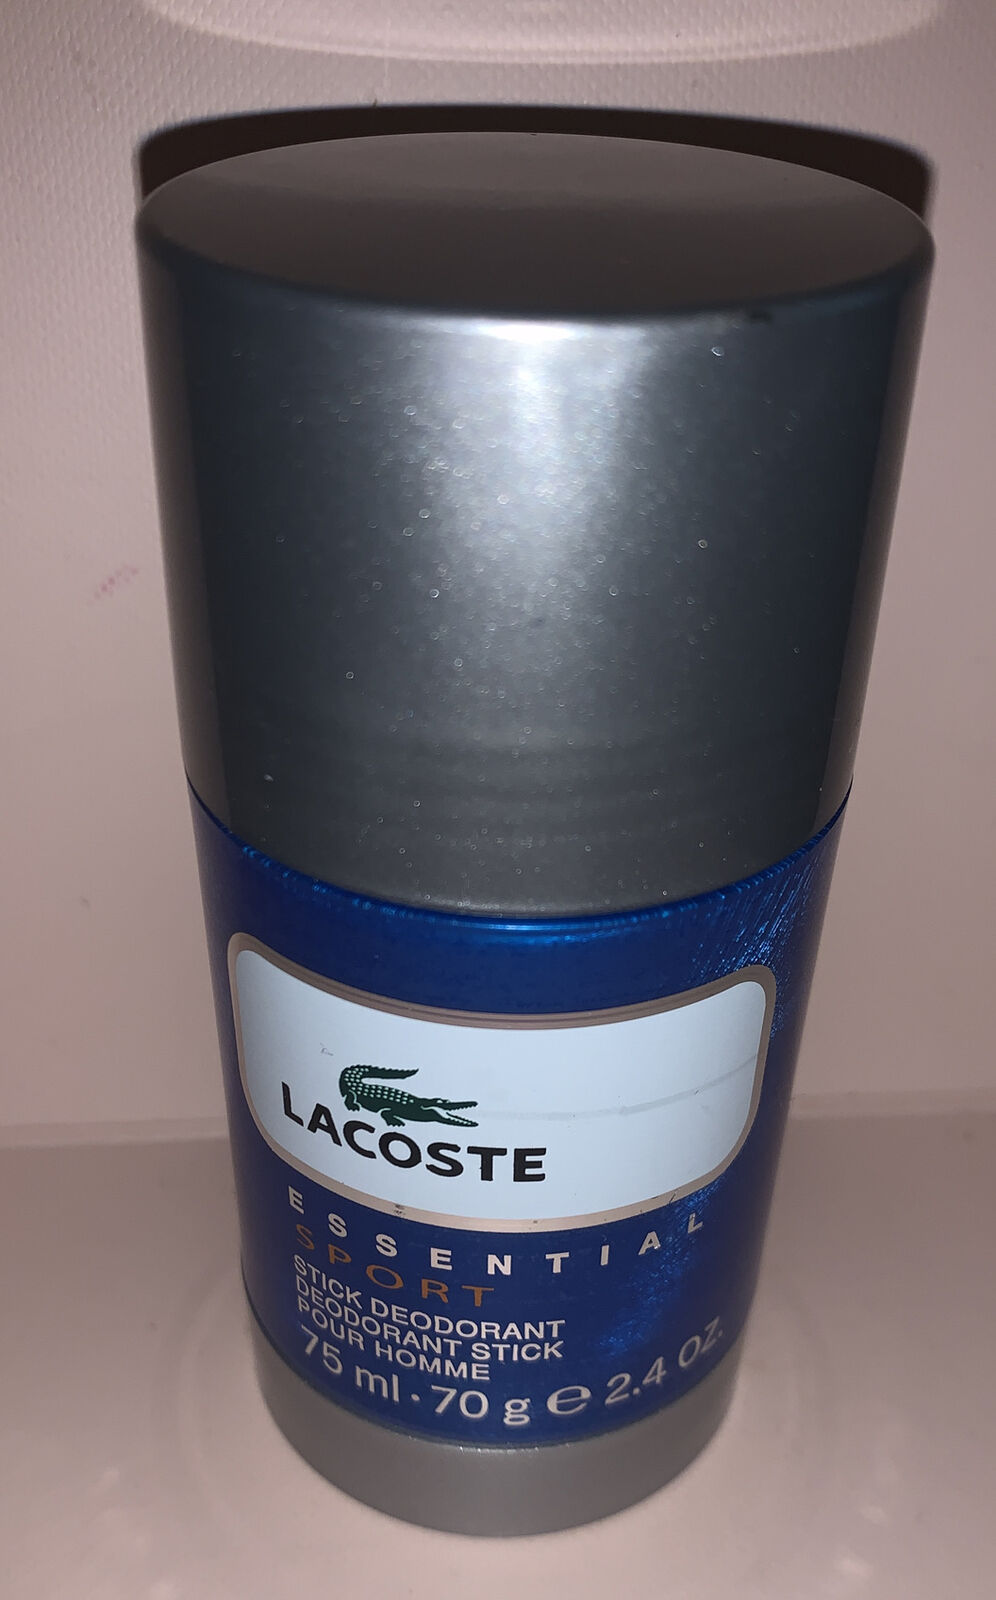 LACOSTE Essential Sport Stick Deodorant Pour Homme 70G